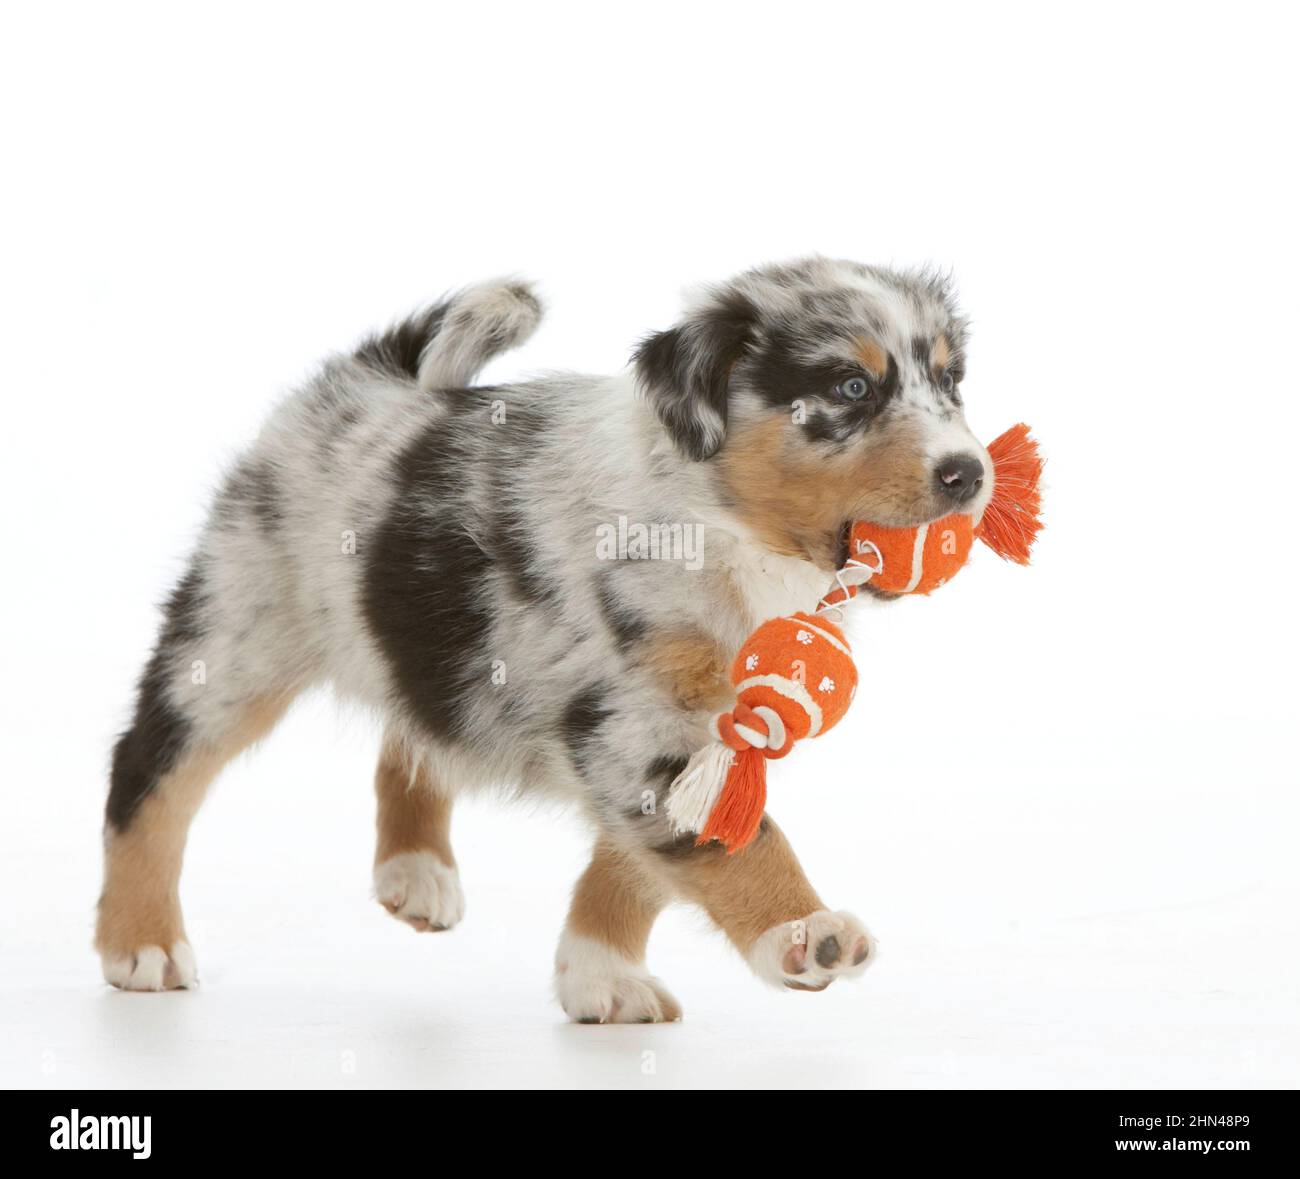 Pastor australiano. Un cachorro que lleva un juguete. Imagen de estudio sobre fondo blanco. Alemania Foto de stock